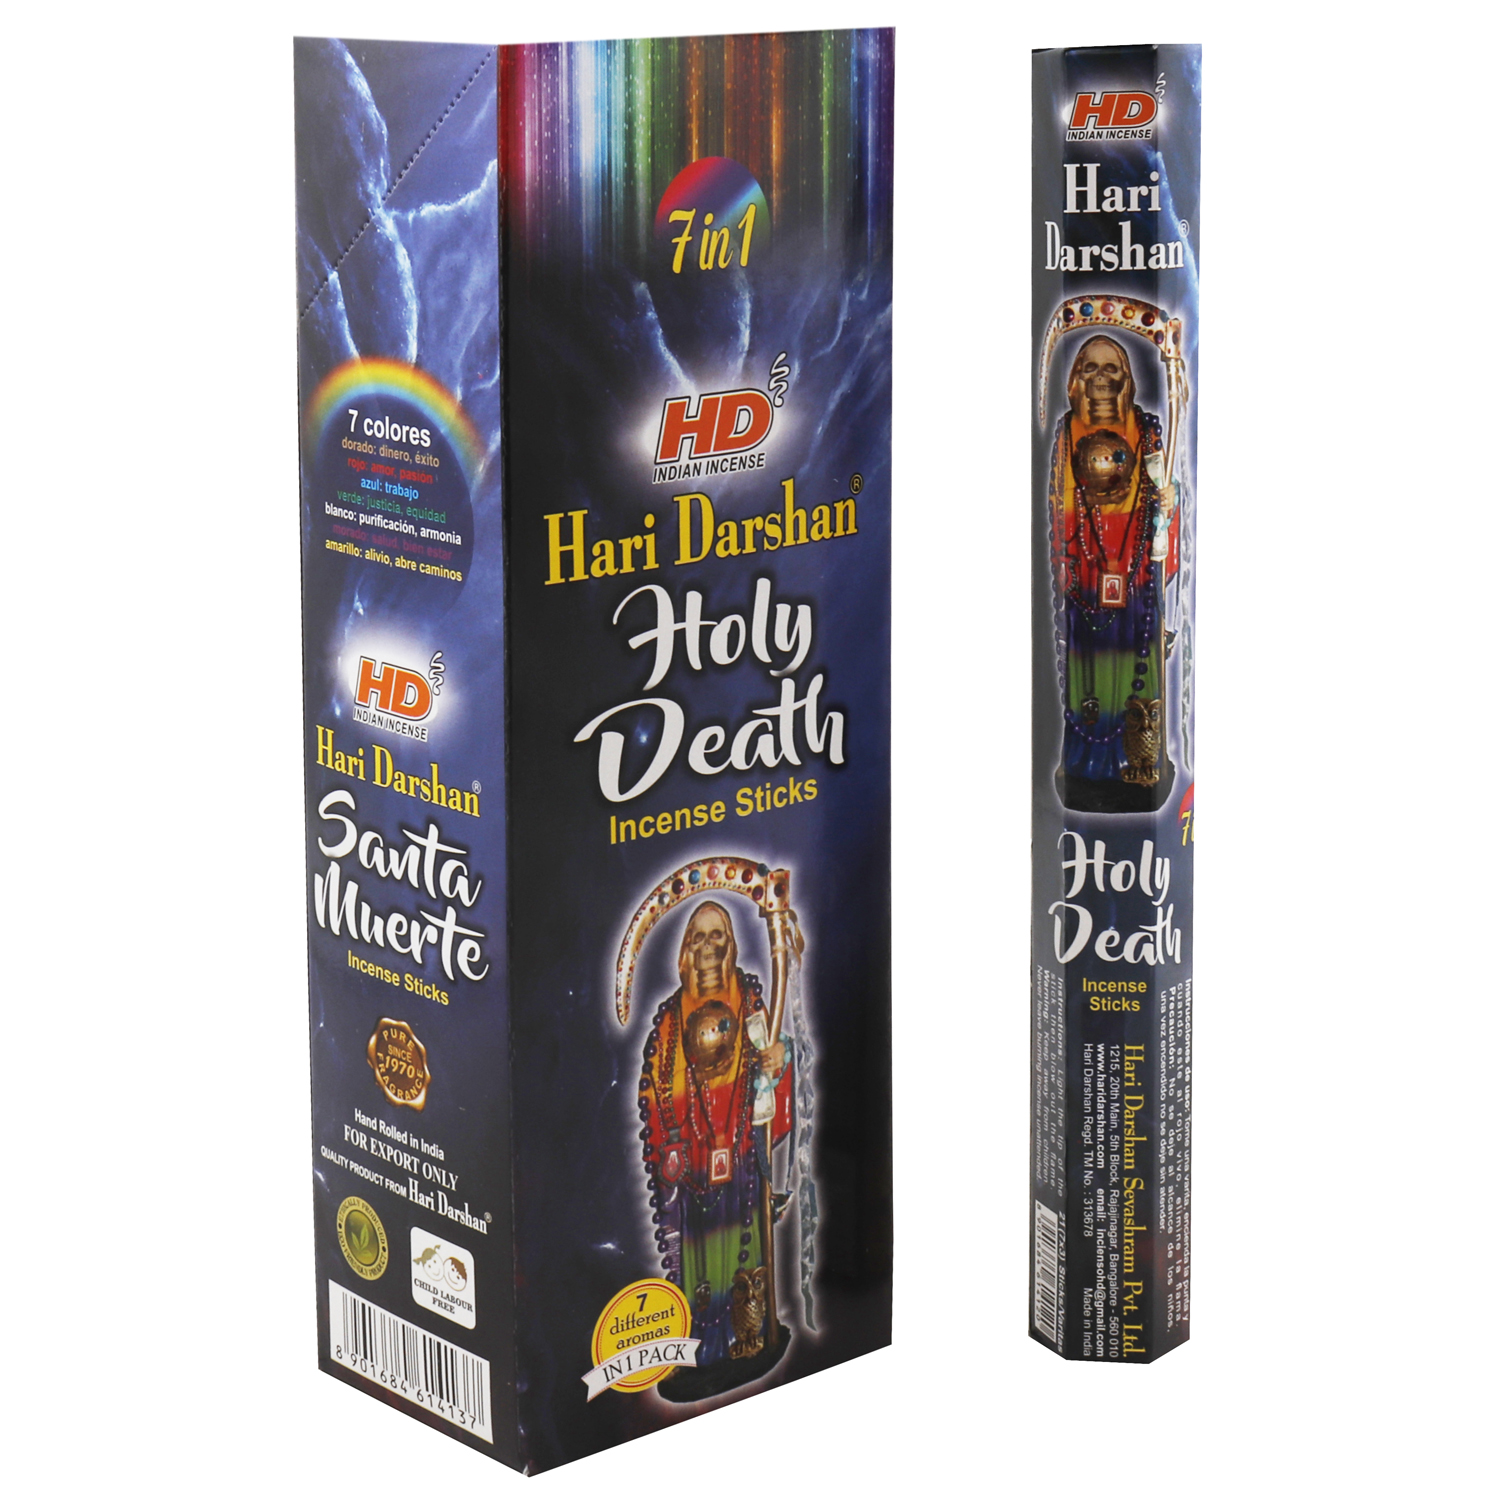 HARI DARSHAN HOLY DEATH / SANTA MURRTE